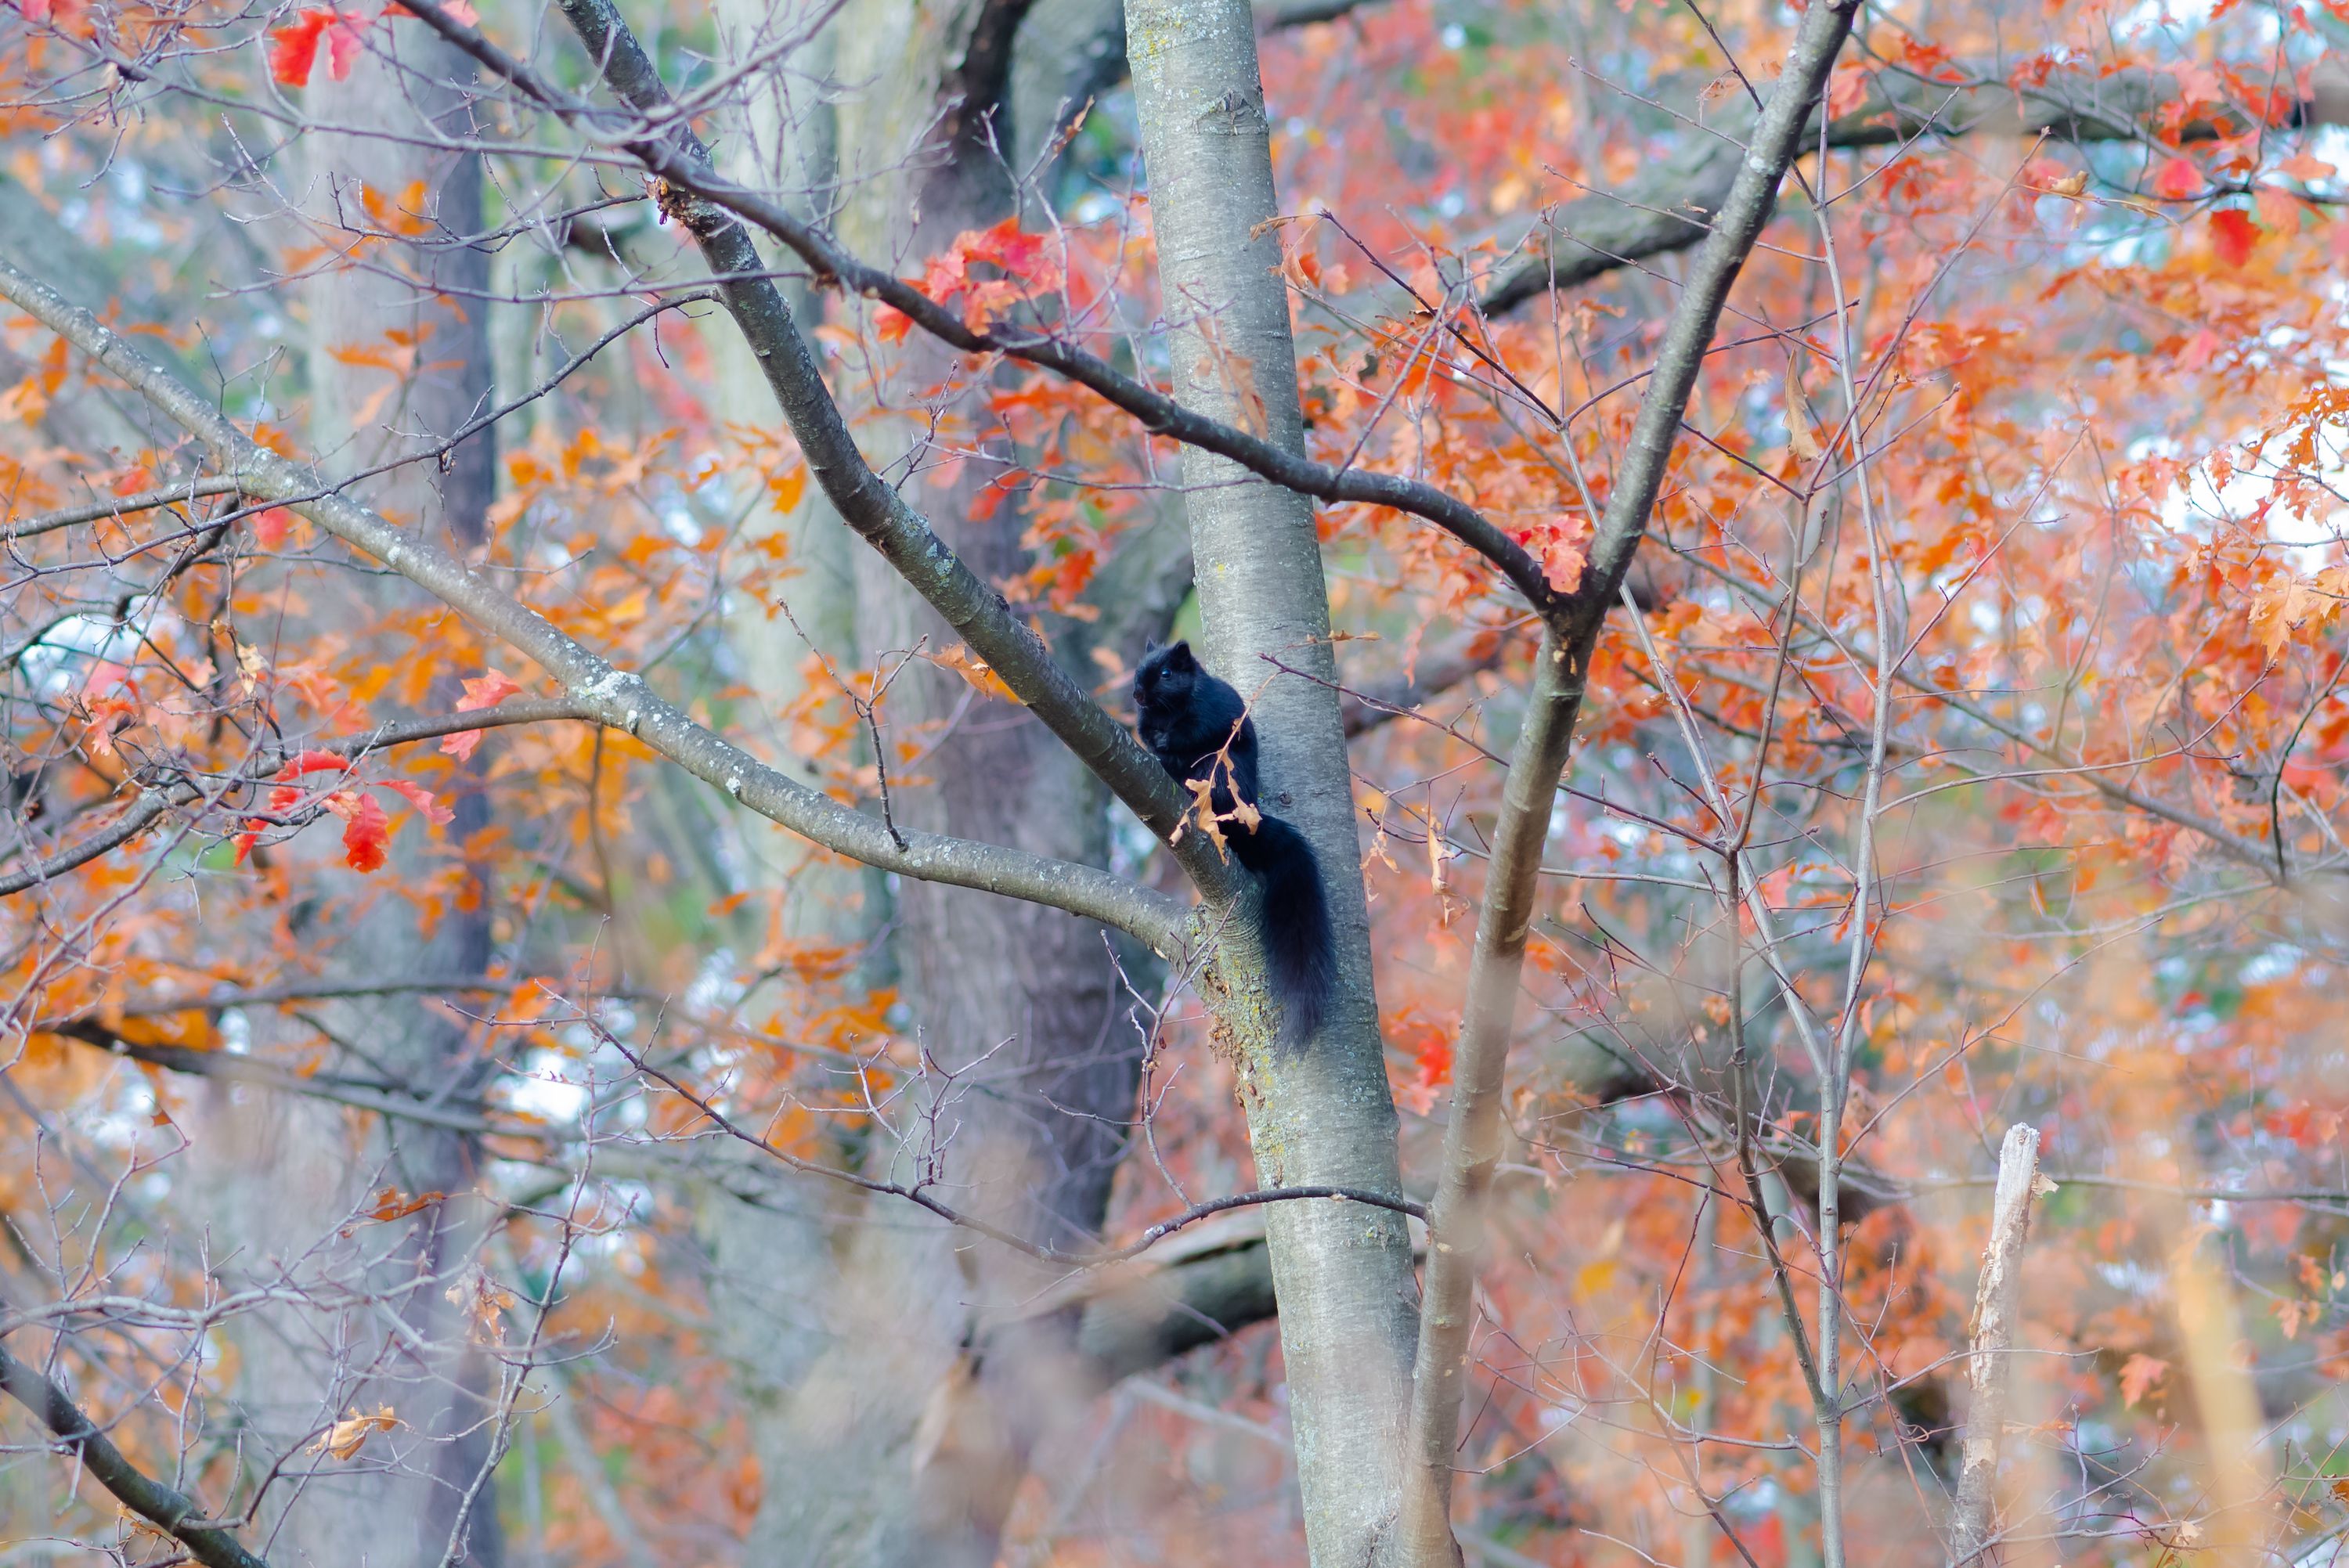 A black squirrel in Fall season